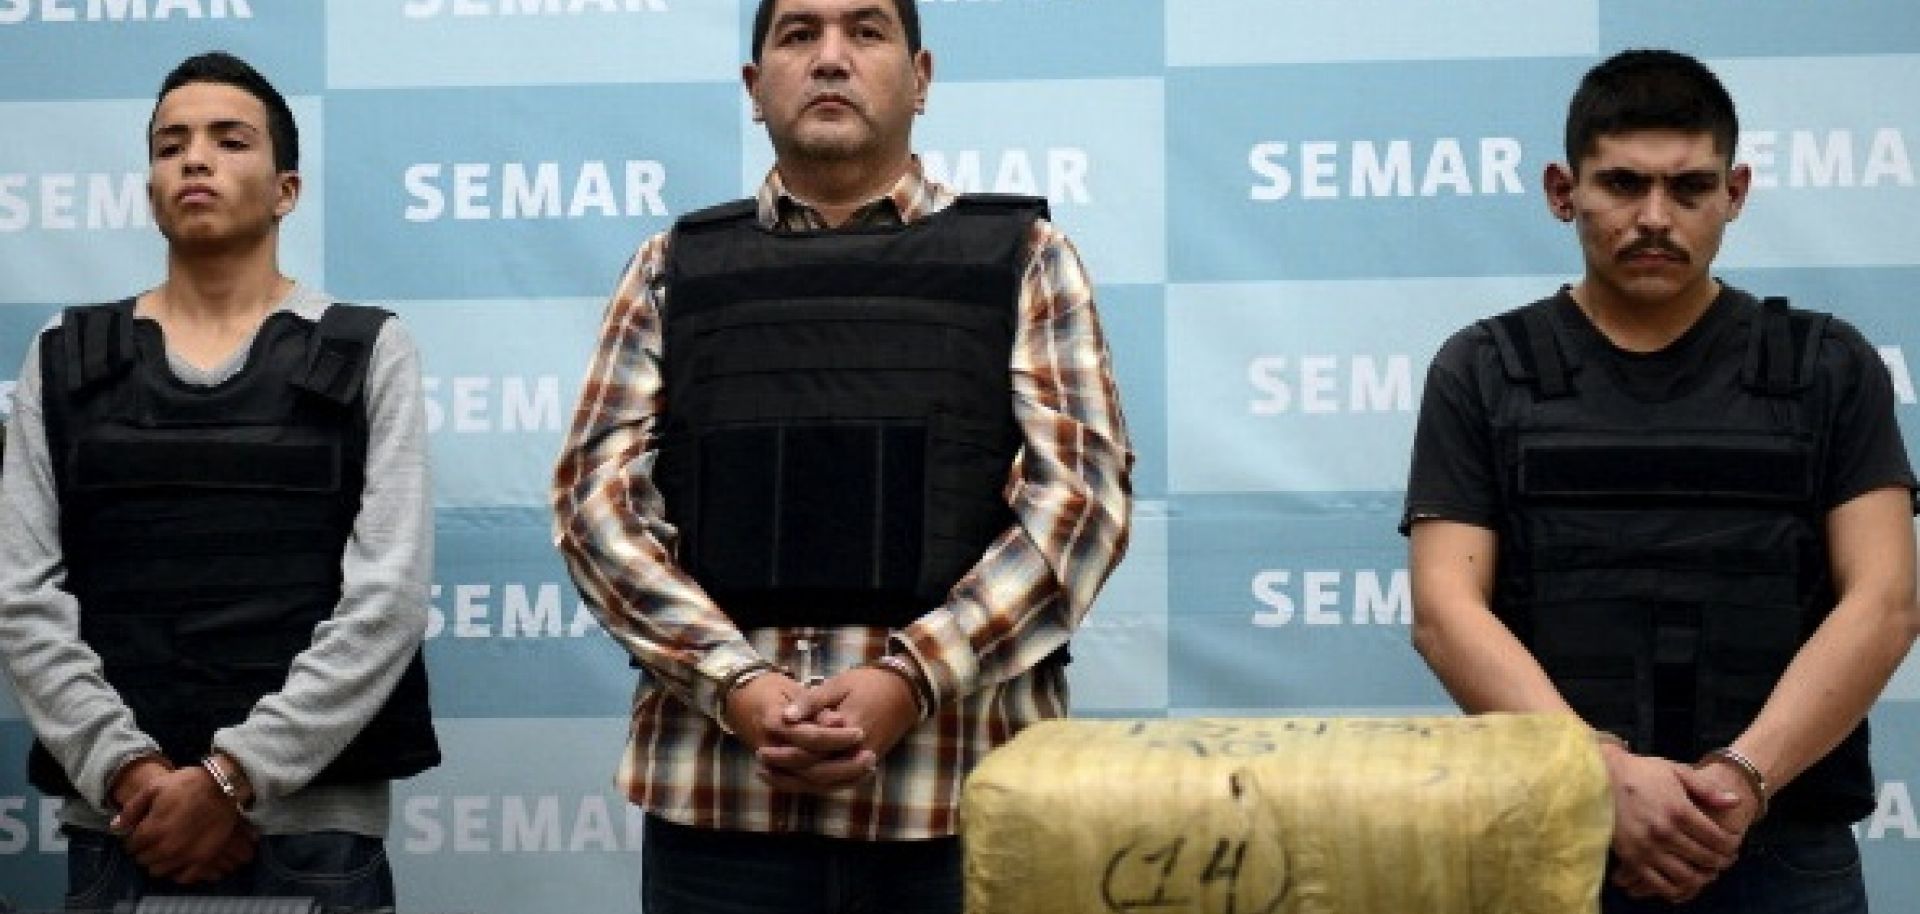 Mexico Strategic Monitoring Alert: Ivan "El Taliban" Velazquez Caballero Arrested